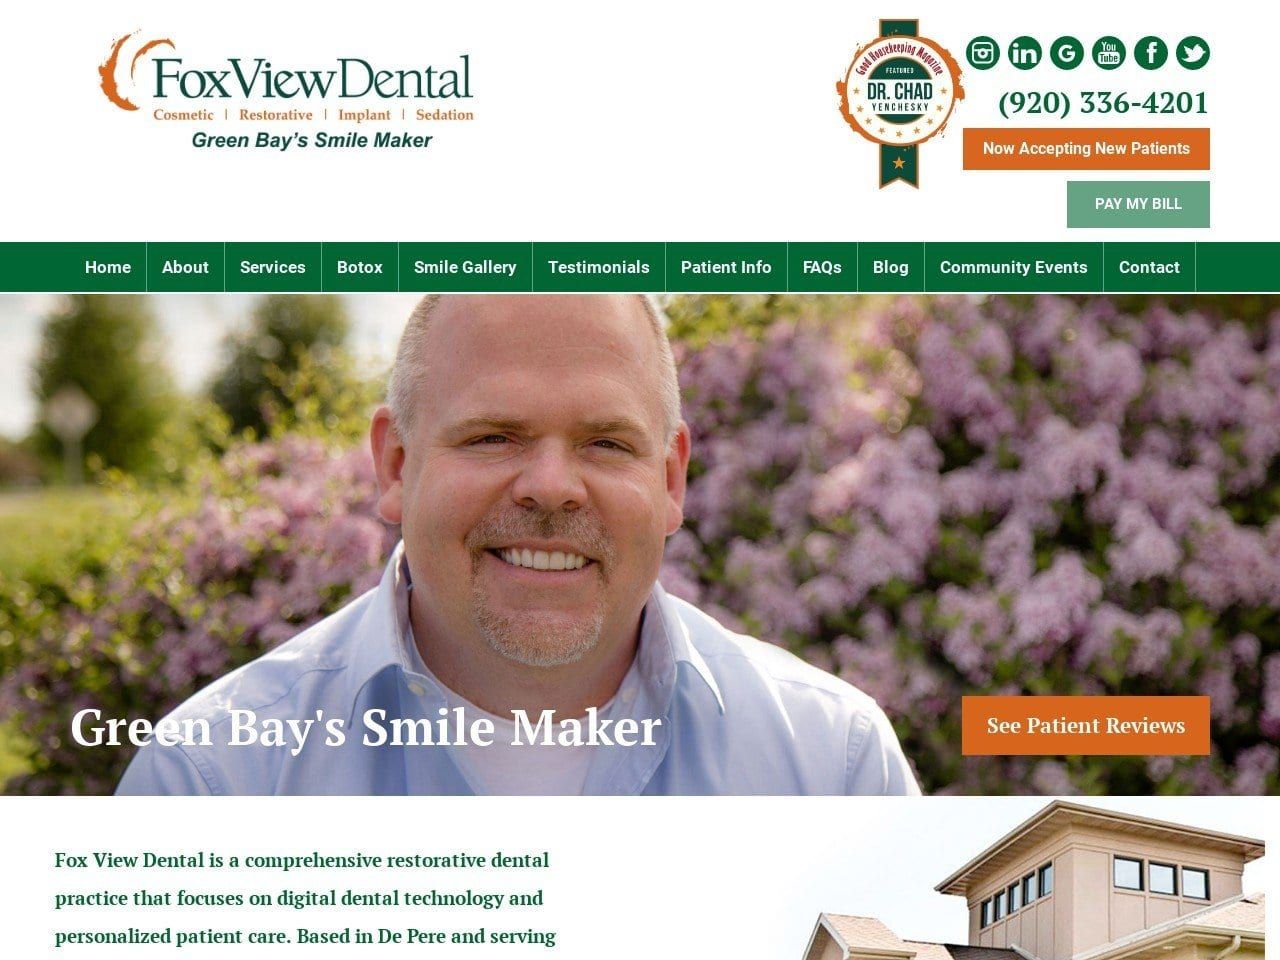 Fox View Dental Website Screenshot from foxviewdental.com